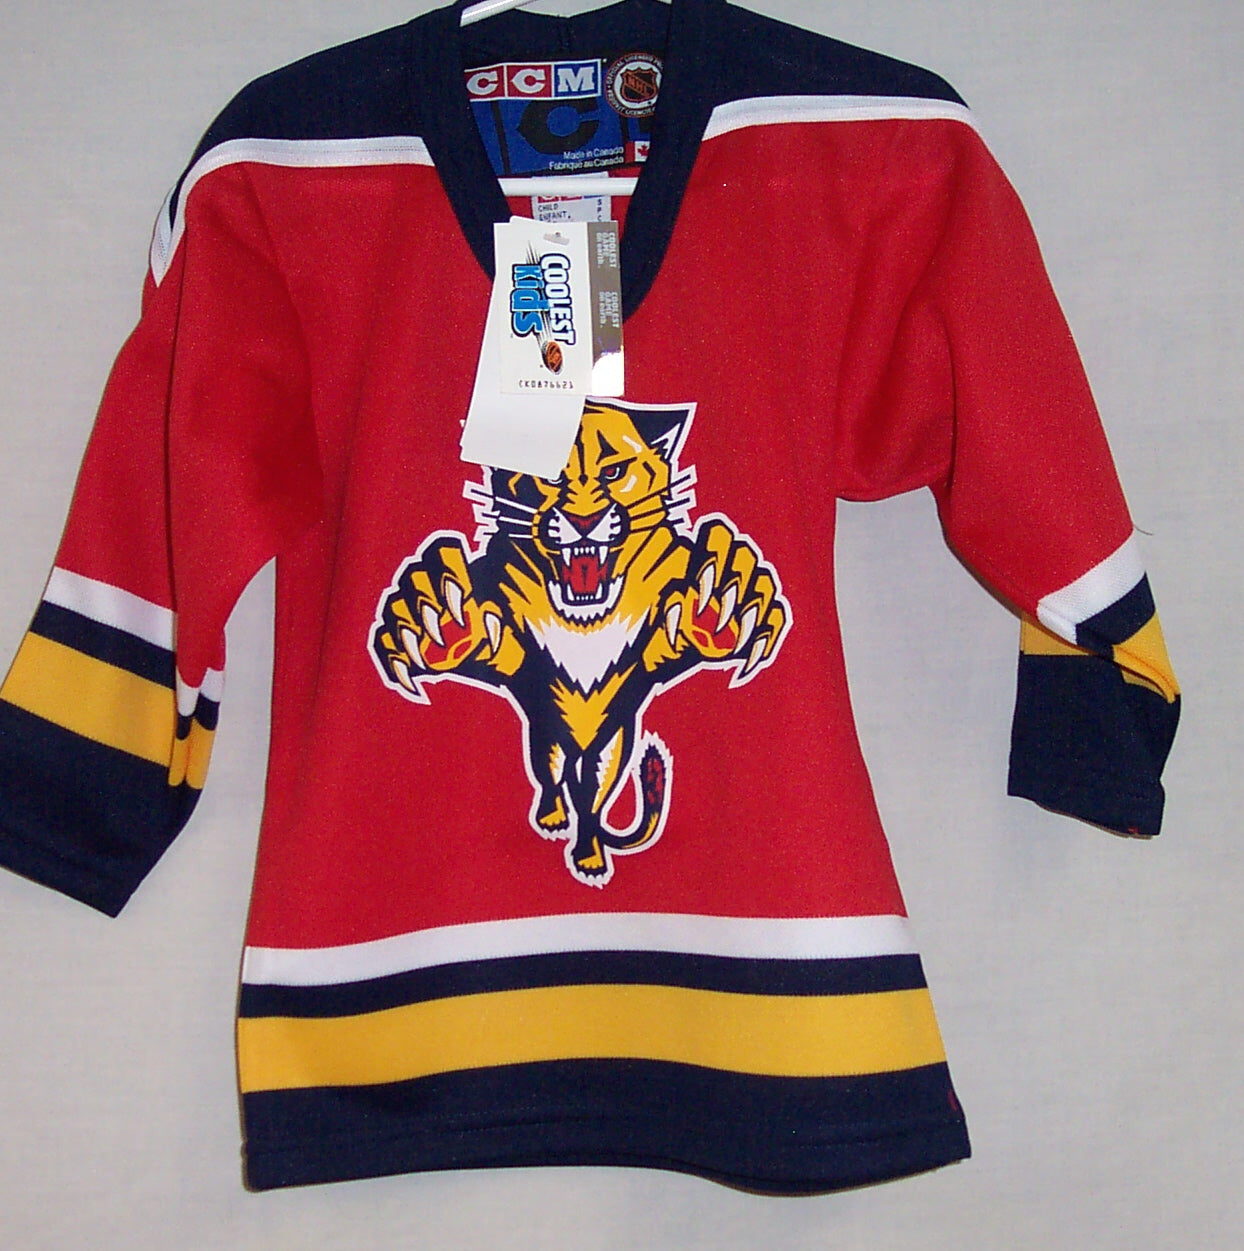 Reebok, Shirts & Tops, Youth Kids Florida Panthers Nhl Hockey Jersey